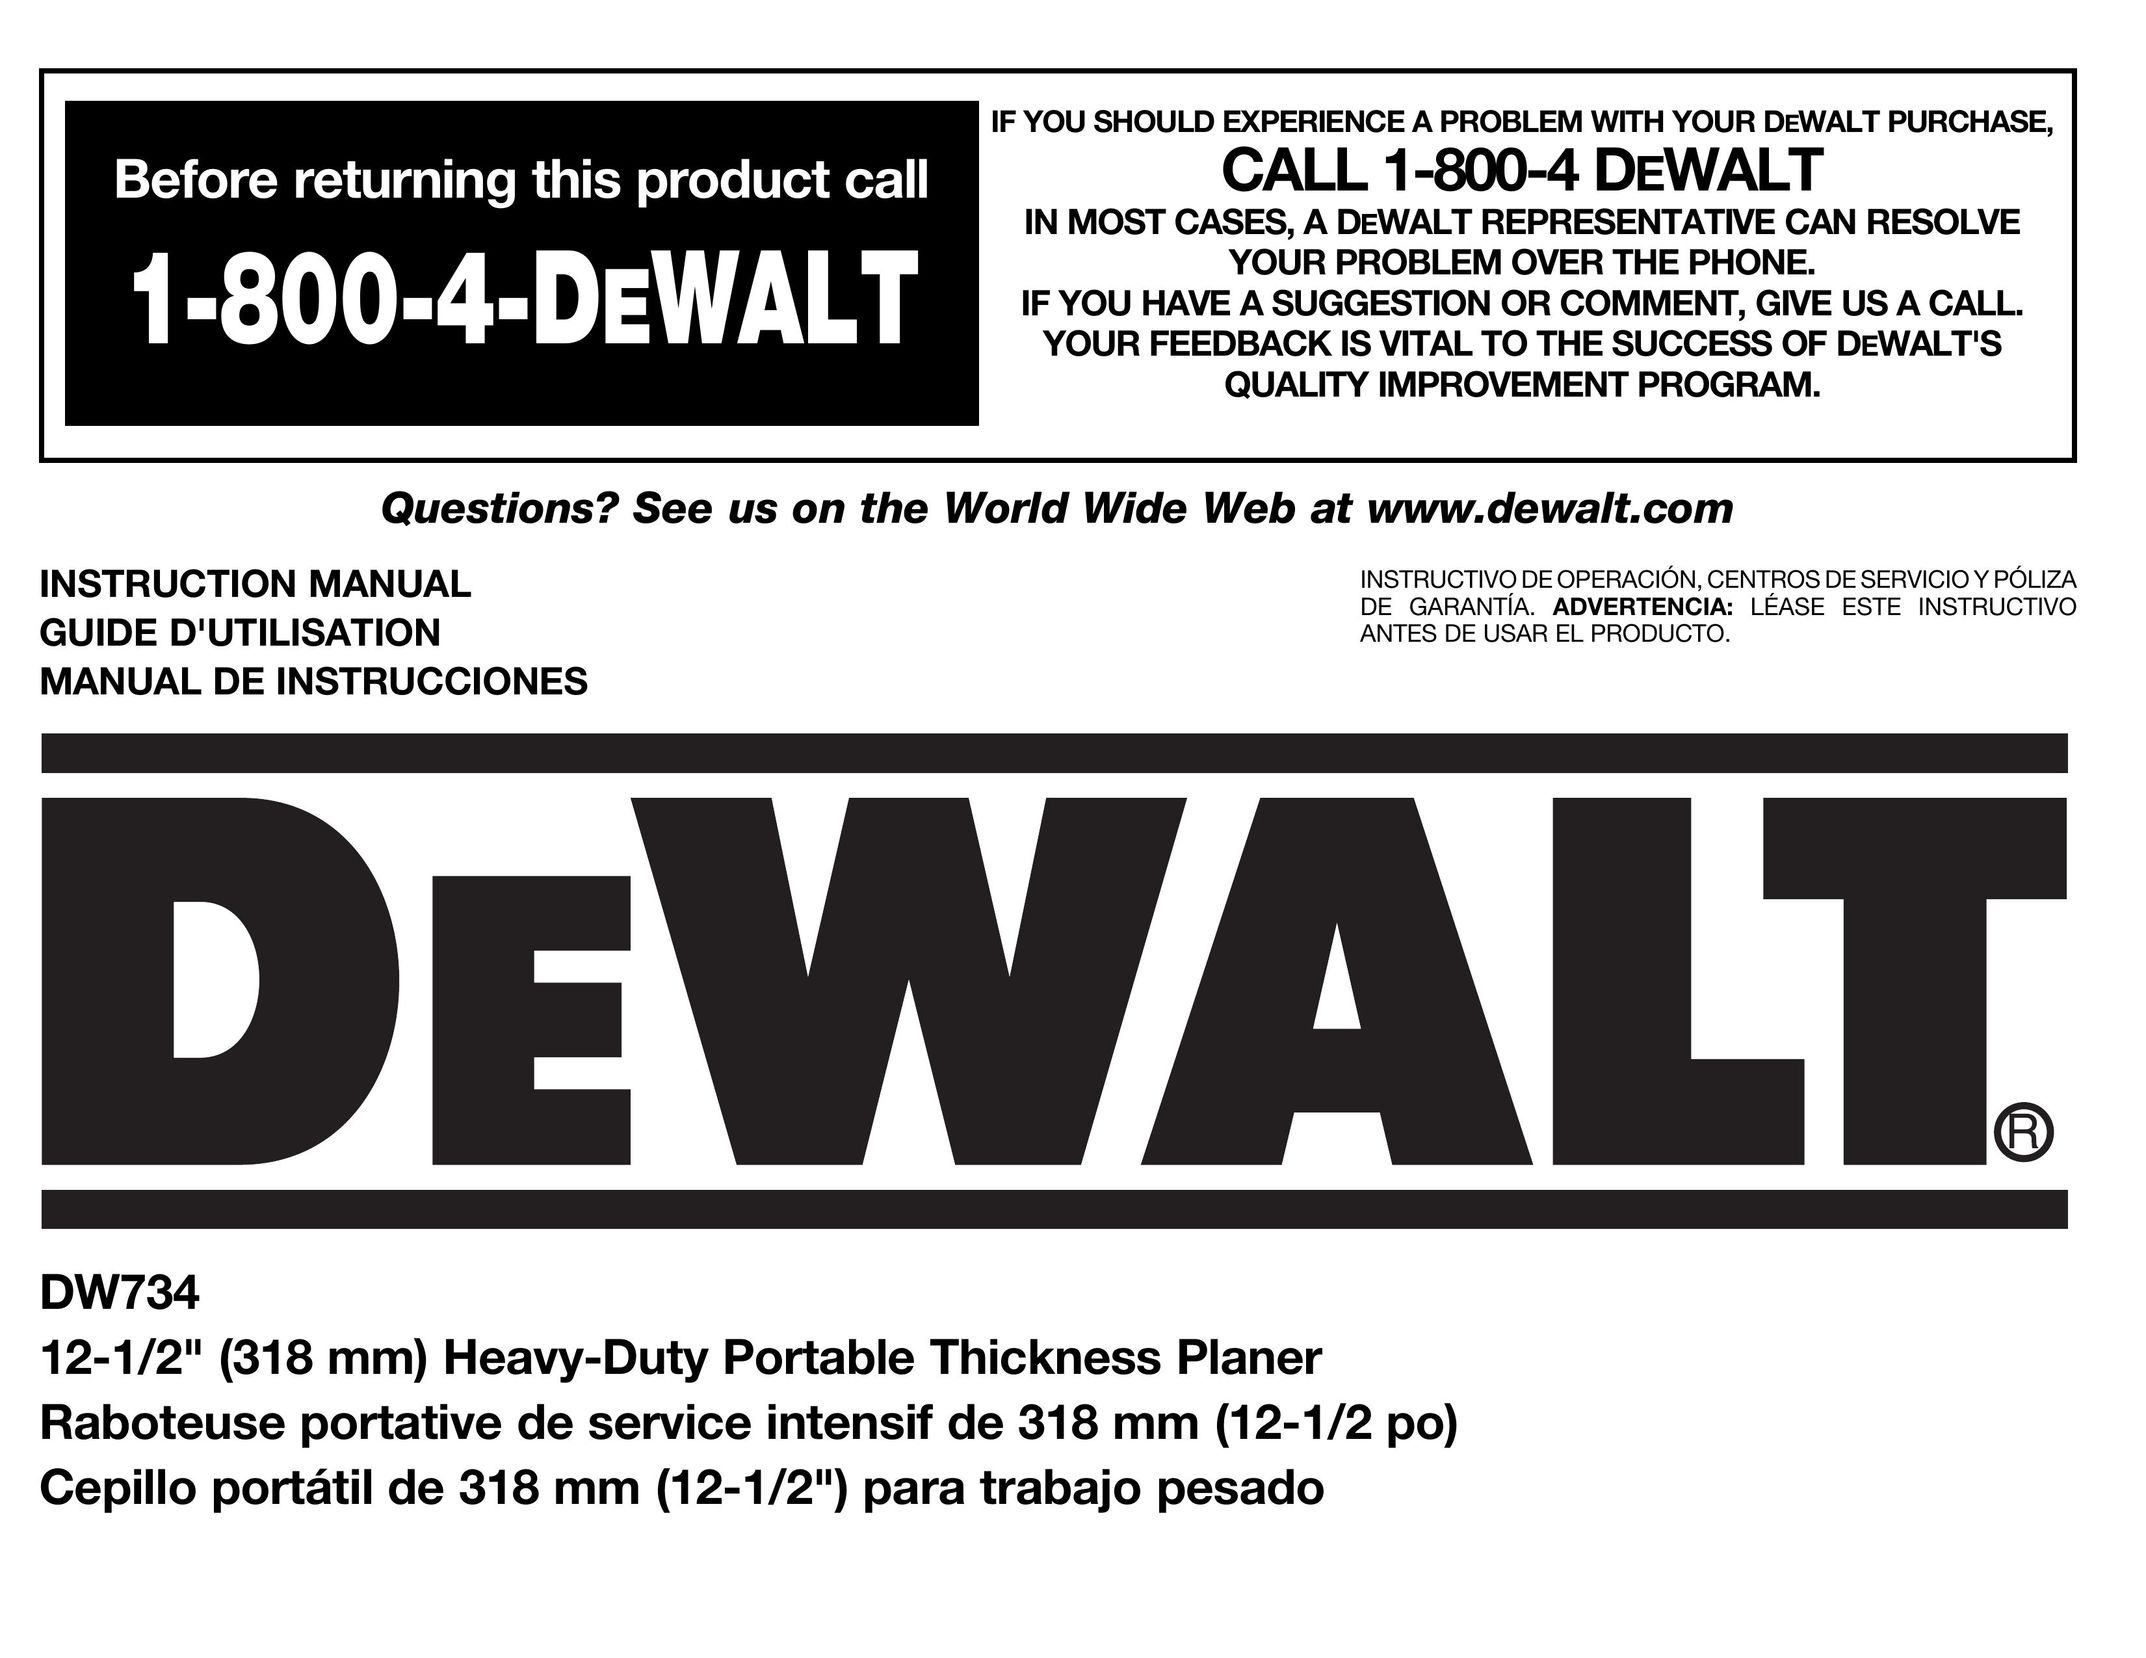 DeWalt DW734 Planer User Manual